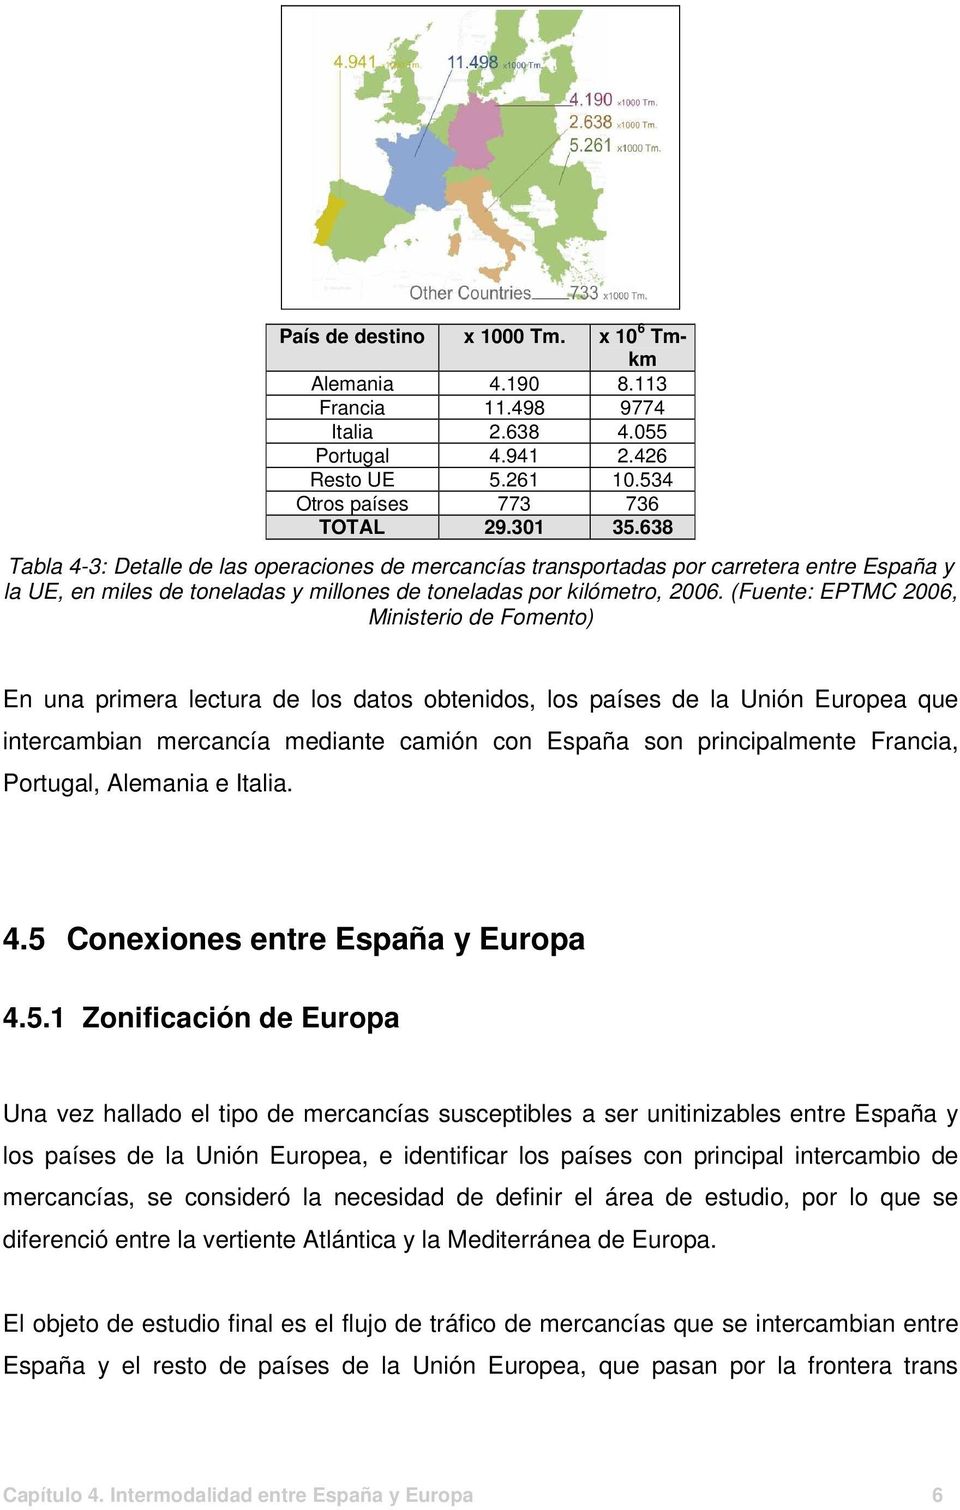 (Fuente: EPTMC 2006, Ministerio de Fomento) En una primera lectura de los datos obtenidos, los países de la Unión Europea que intercambian mercancía mediante camión con España son principalmente